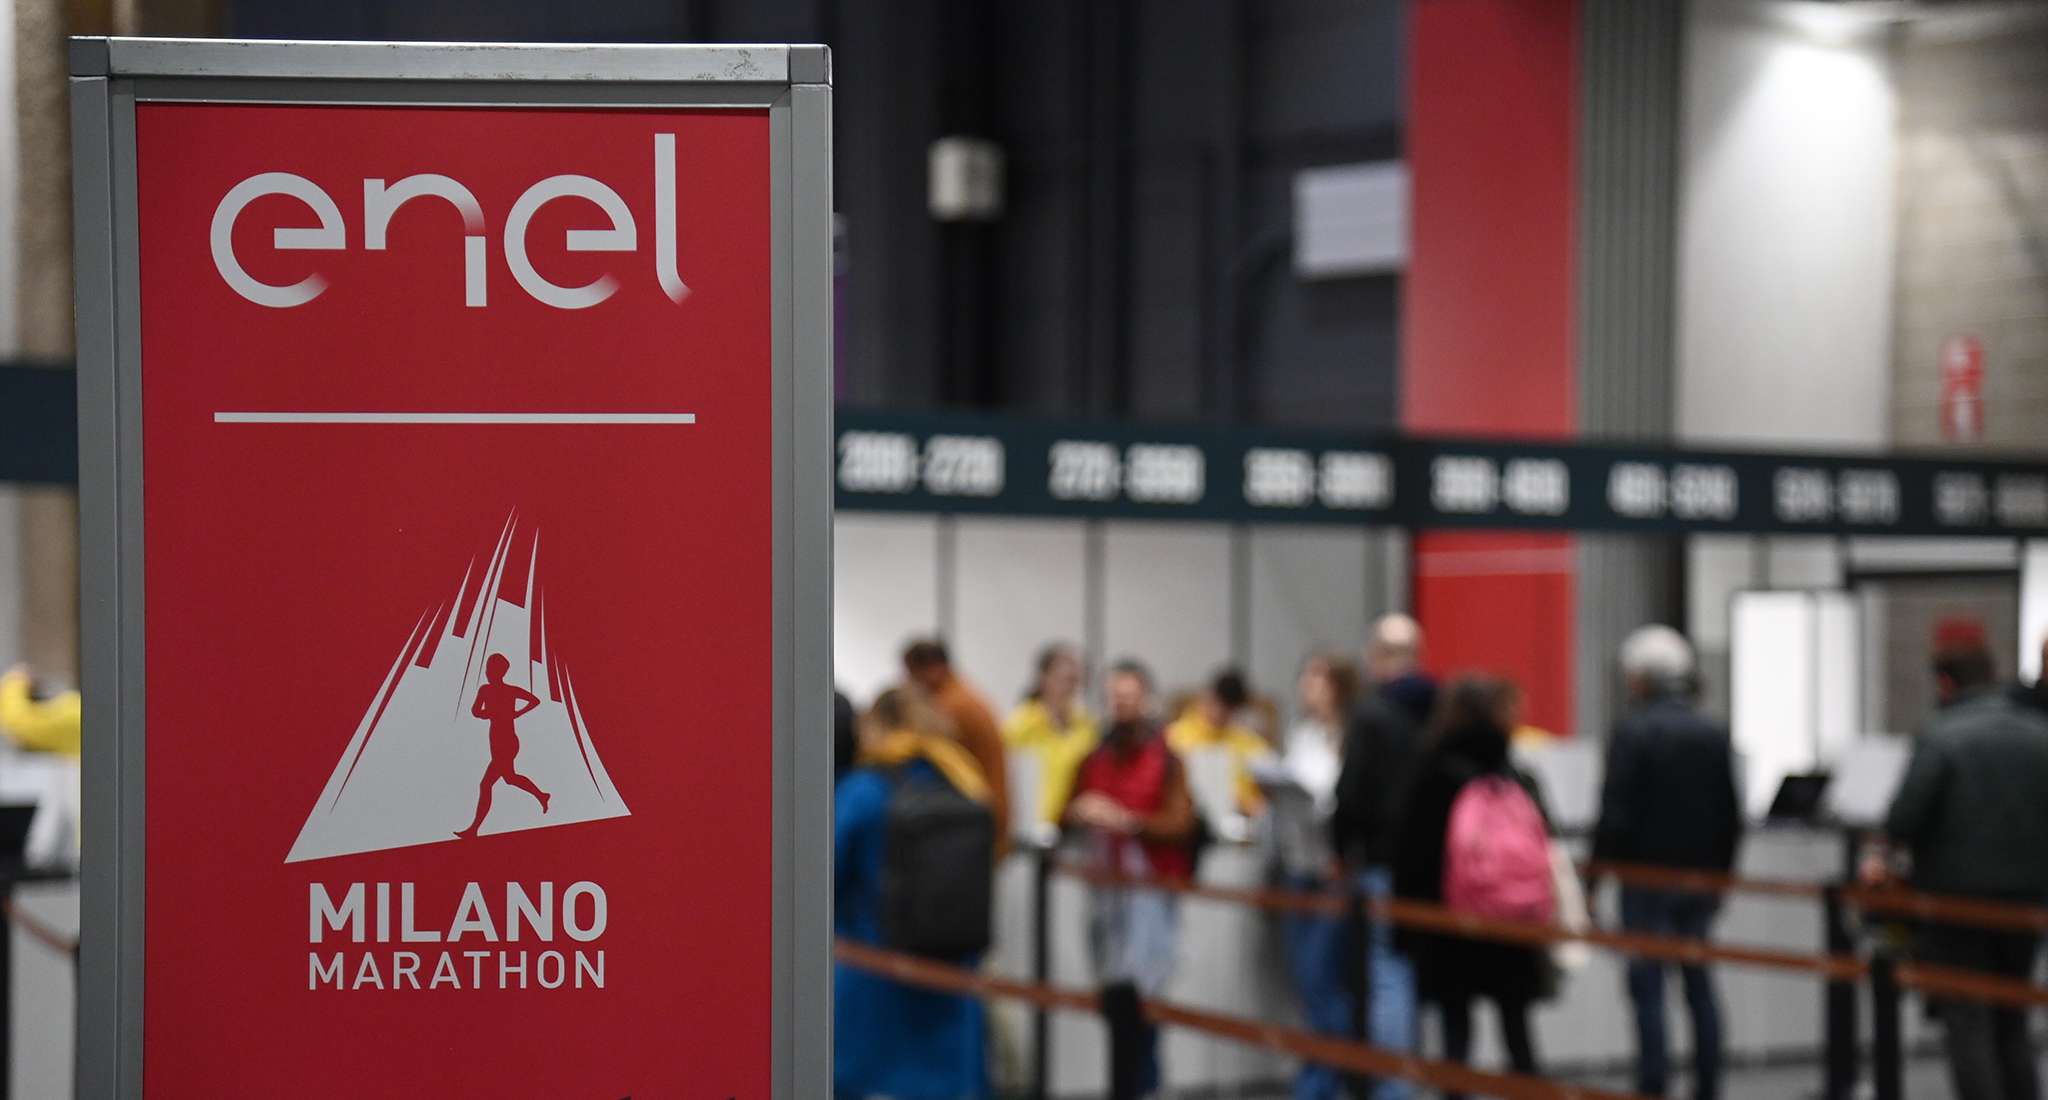 Primo giorno del Milano Running Festival al MiCo. Domani alle 15.00 la presentazione dei Top Runner. Presente anche Crippa.